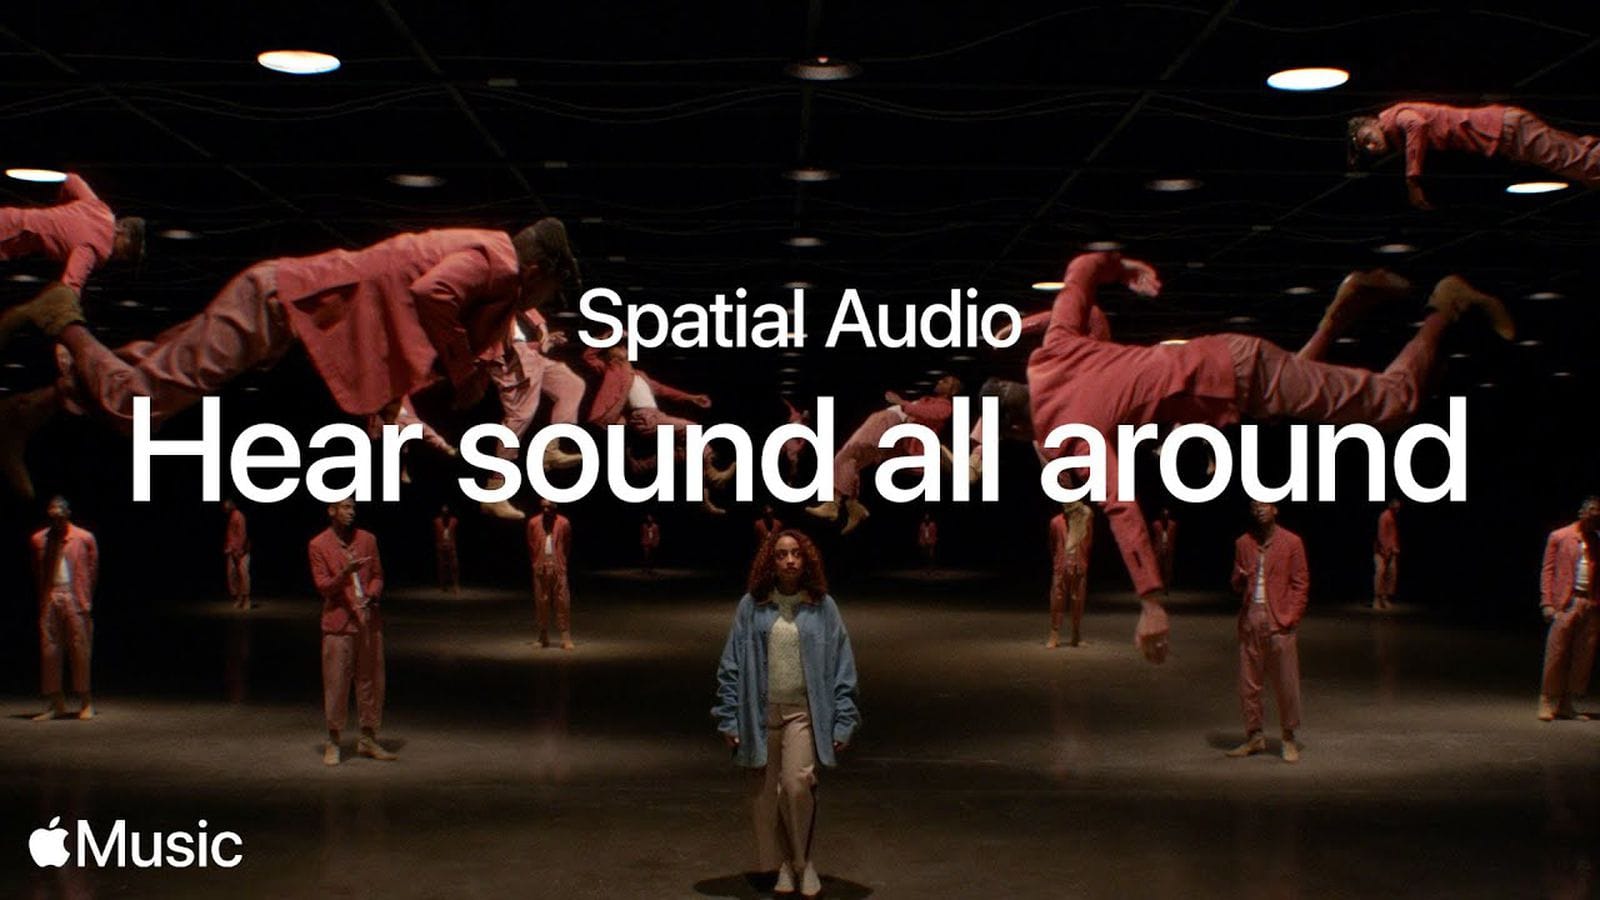 Инди-лейблы считают, что роялти от Apple Music за использование Spatial Audio в песнях, выгодны только крупнейшим компаниям